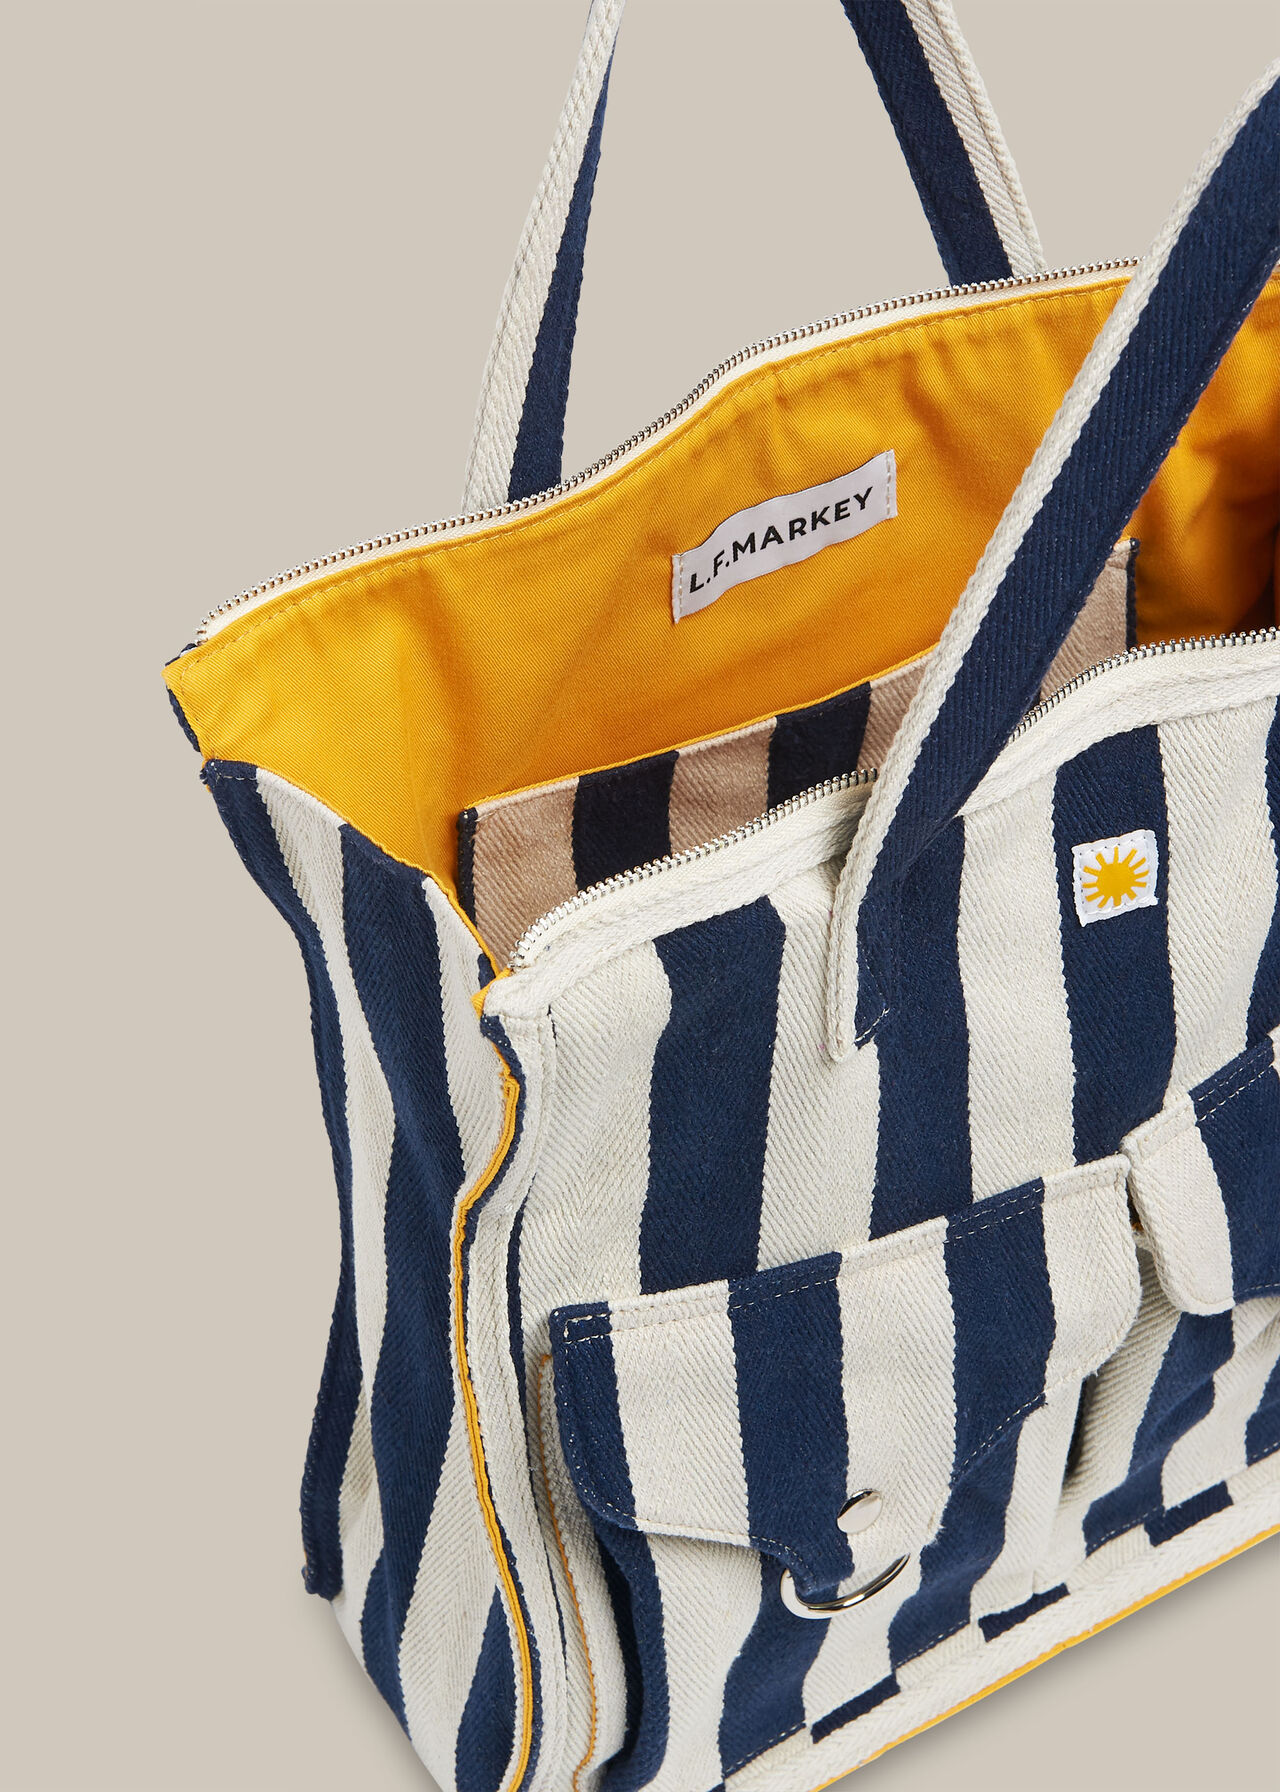 LF Markey Stripe Shopper Bag